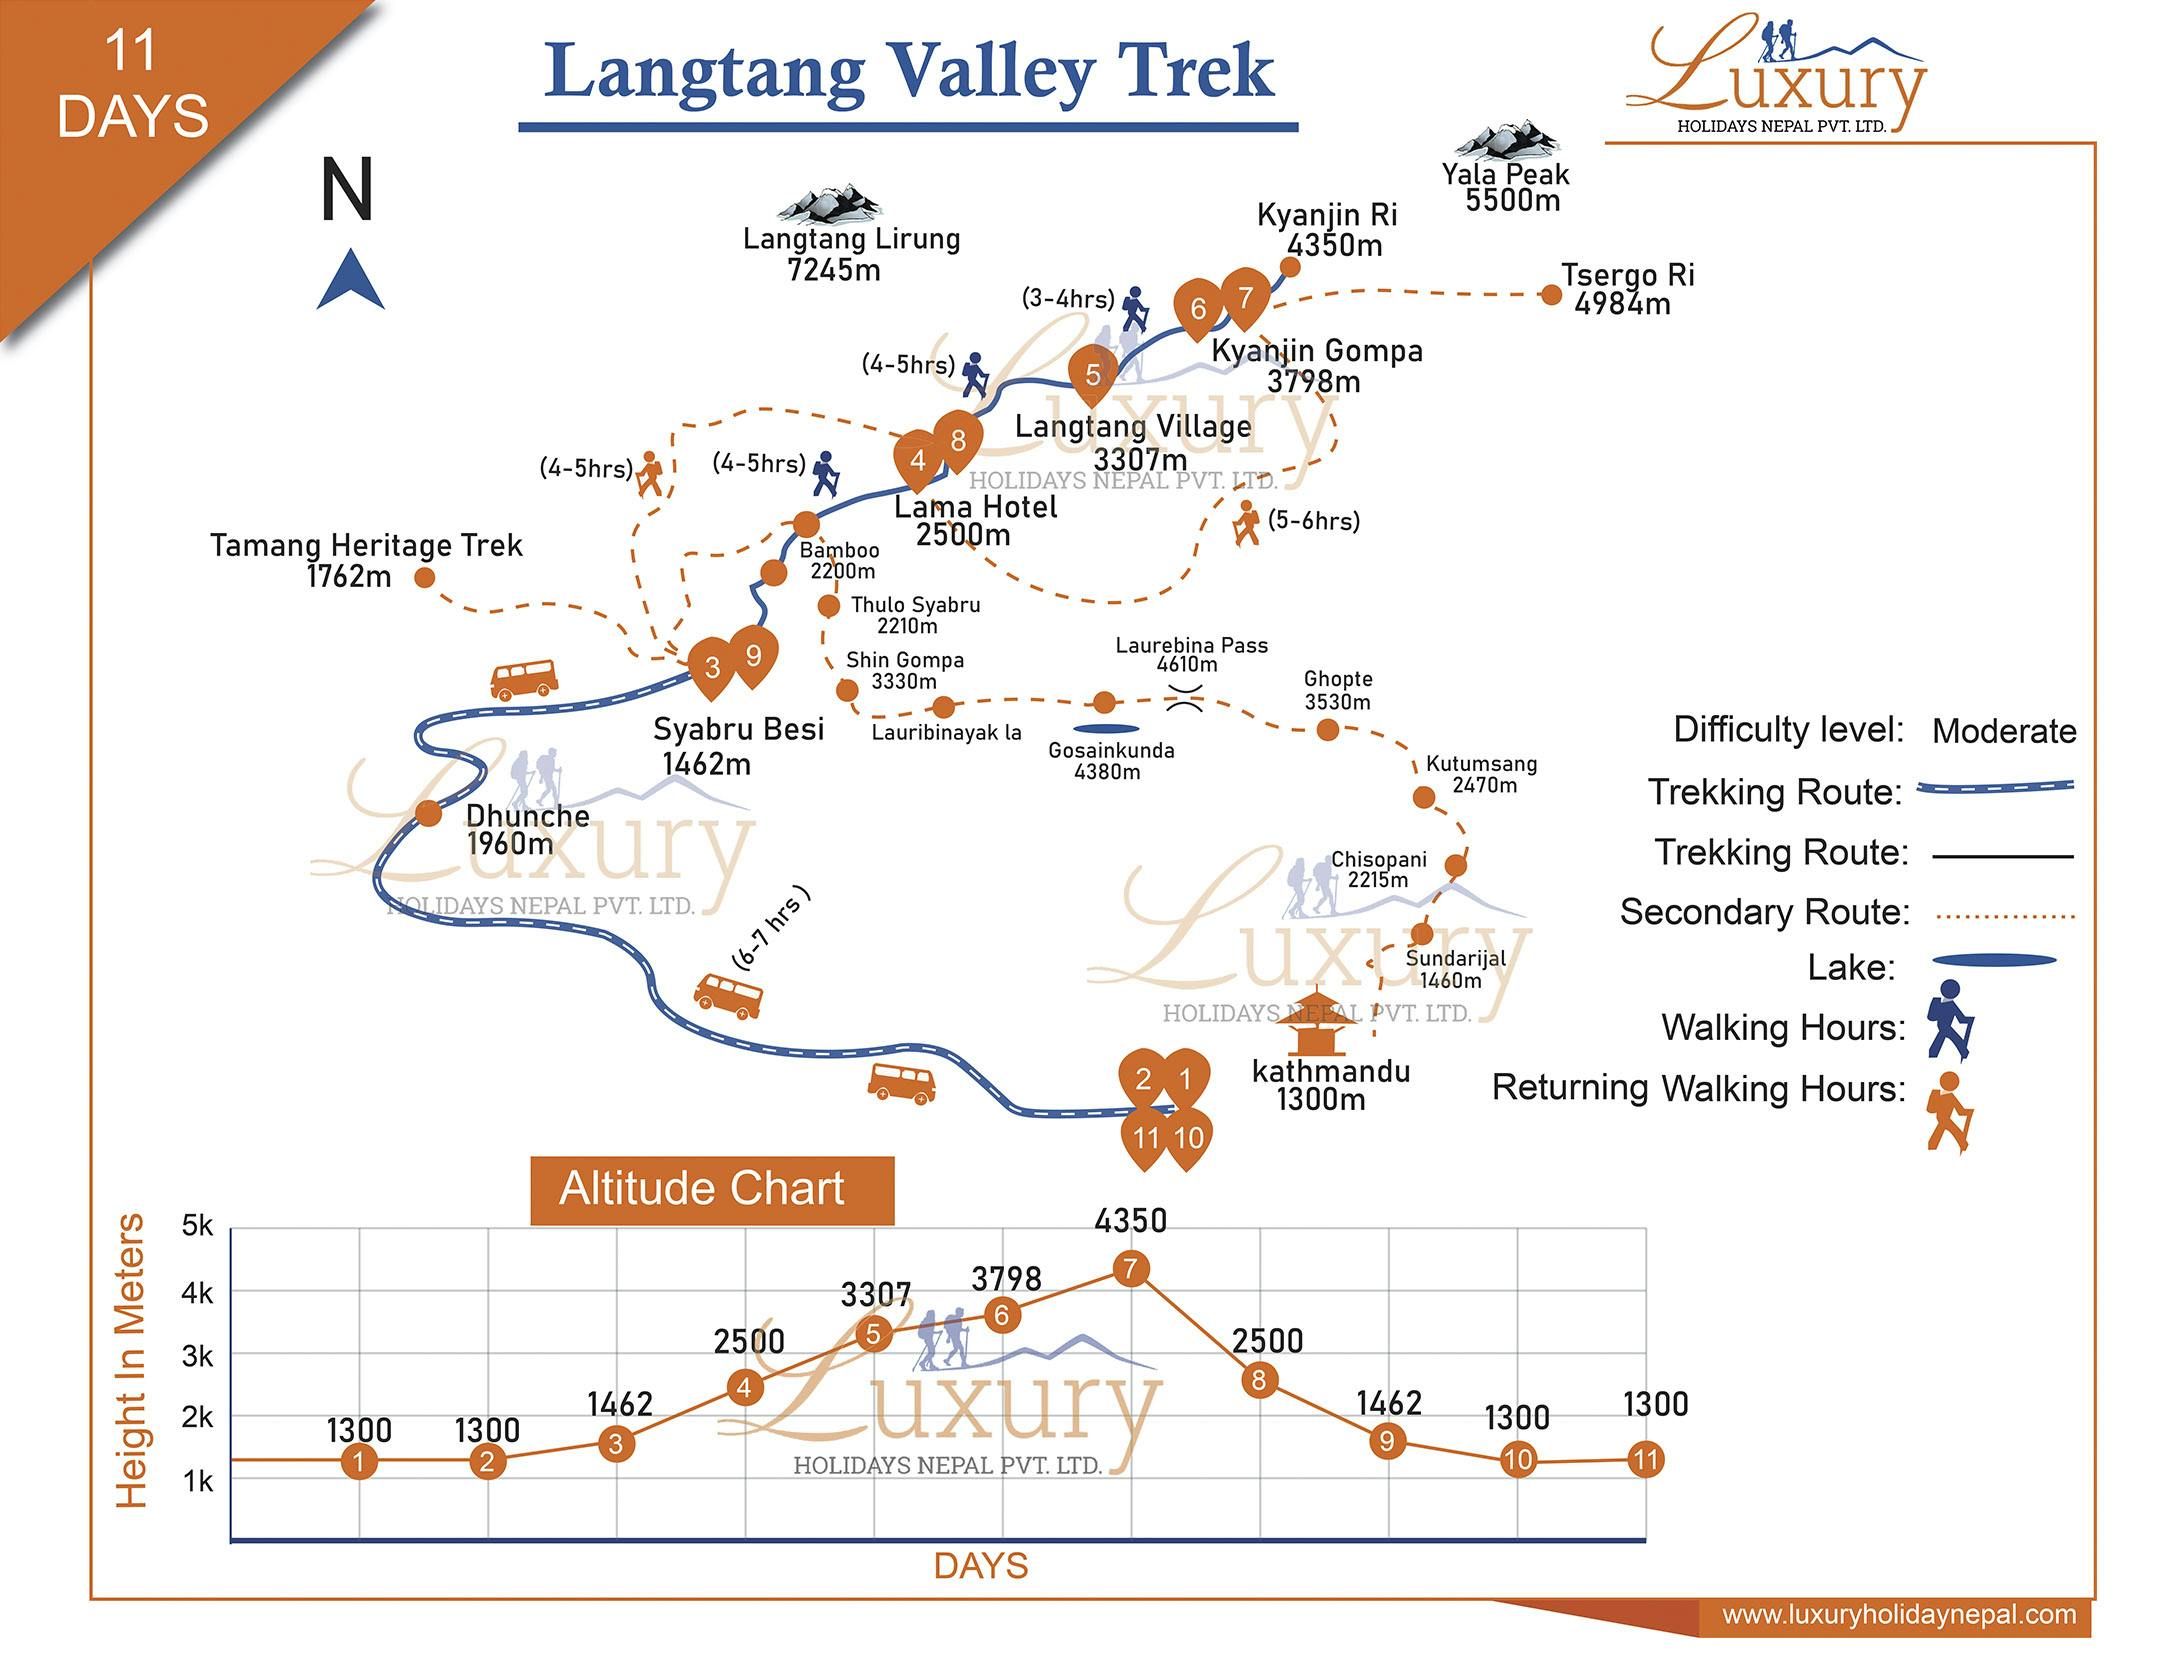 Langtang Valley TrekMap